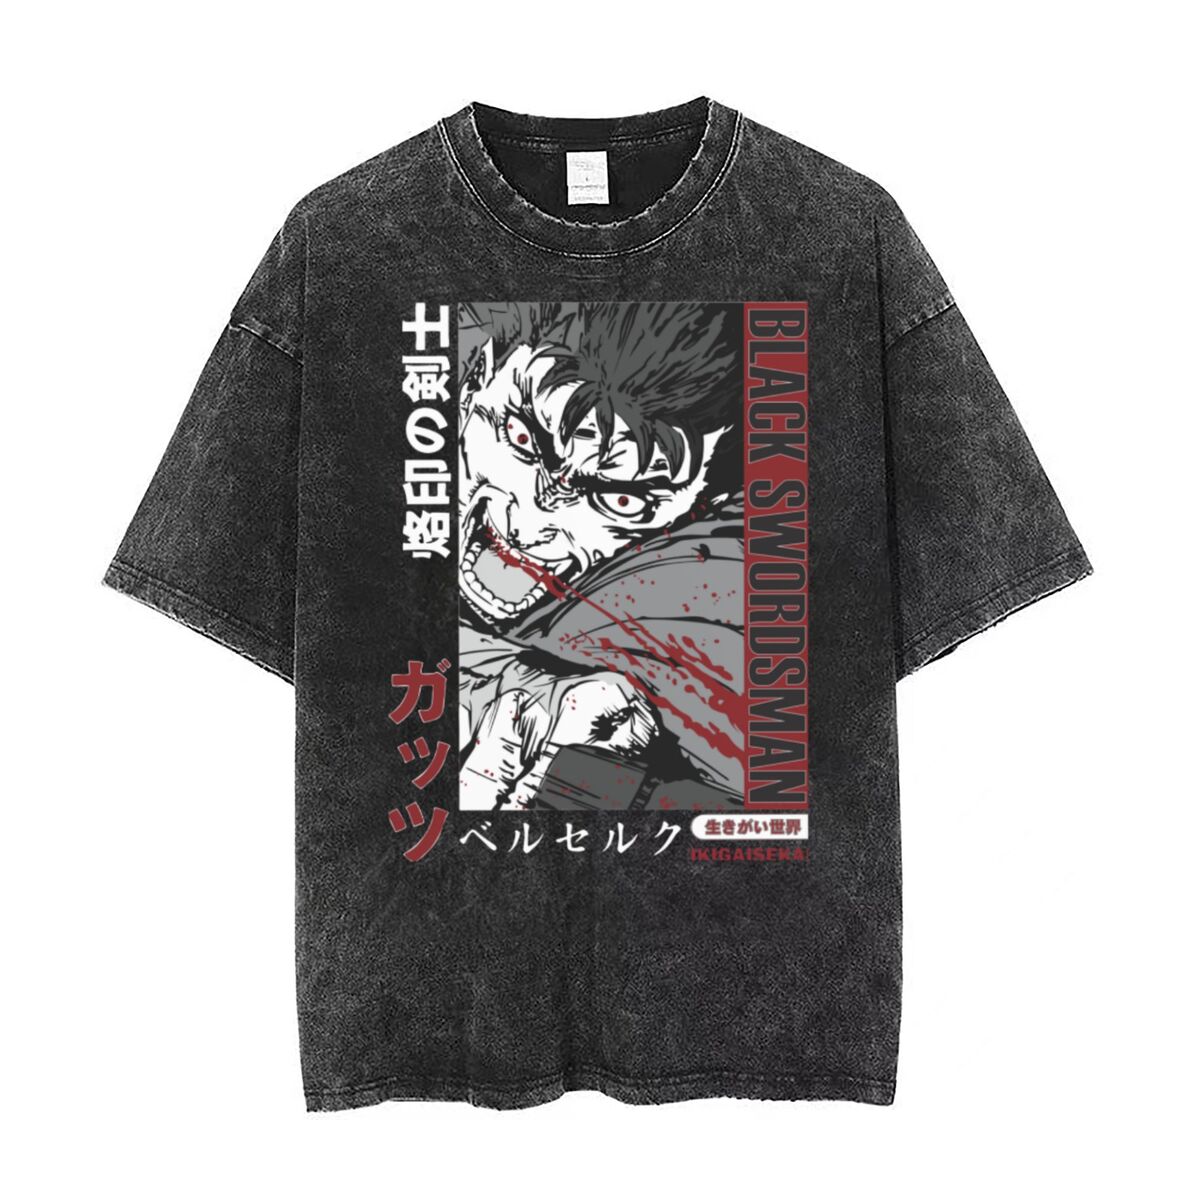 "BLACK SWORDSMAN" - Berserk Anime Vintage Washed Oversized T-Shirt